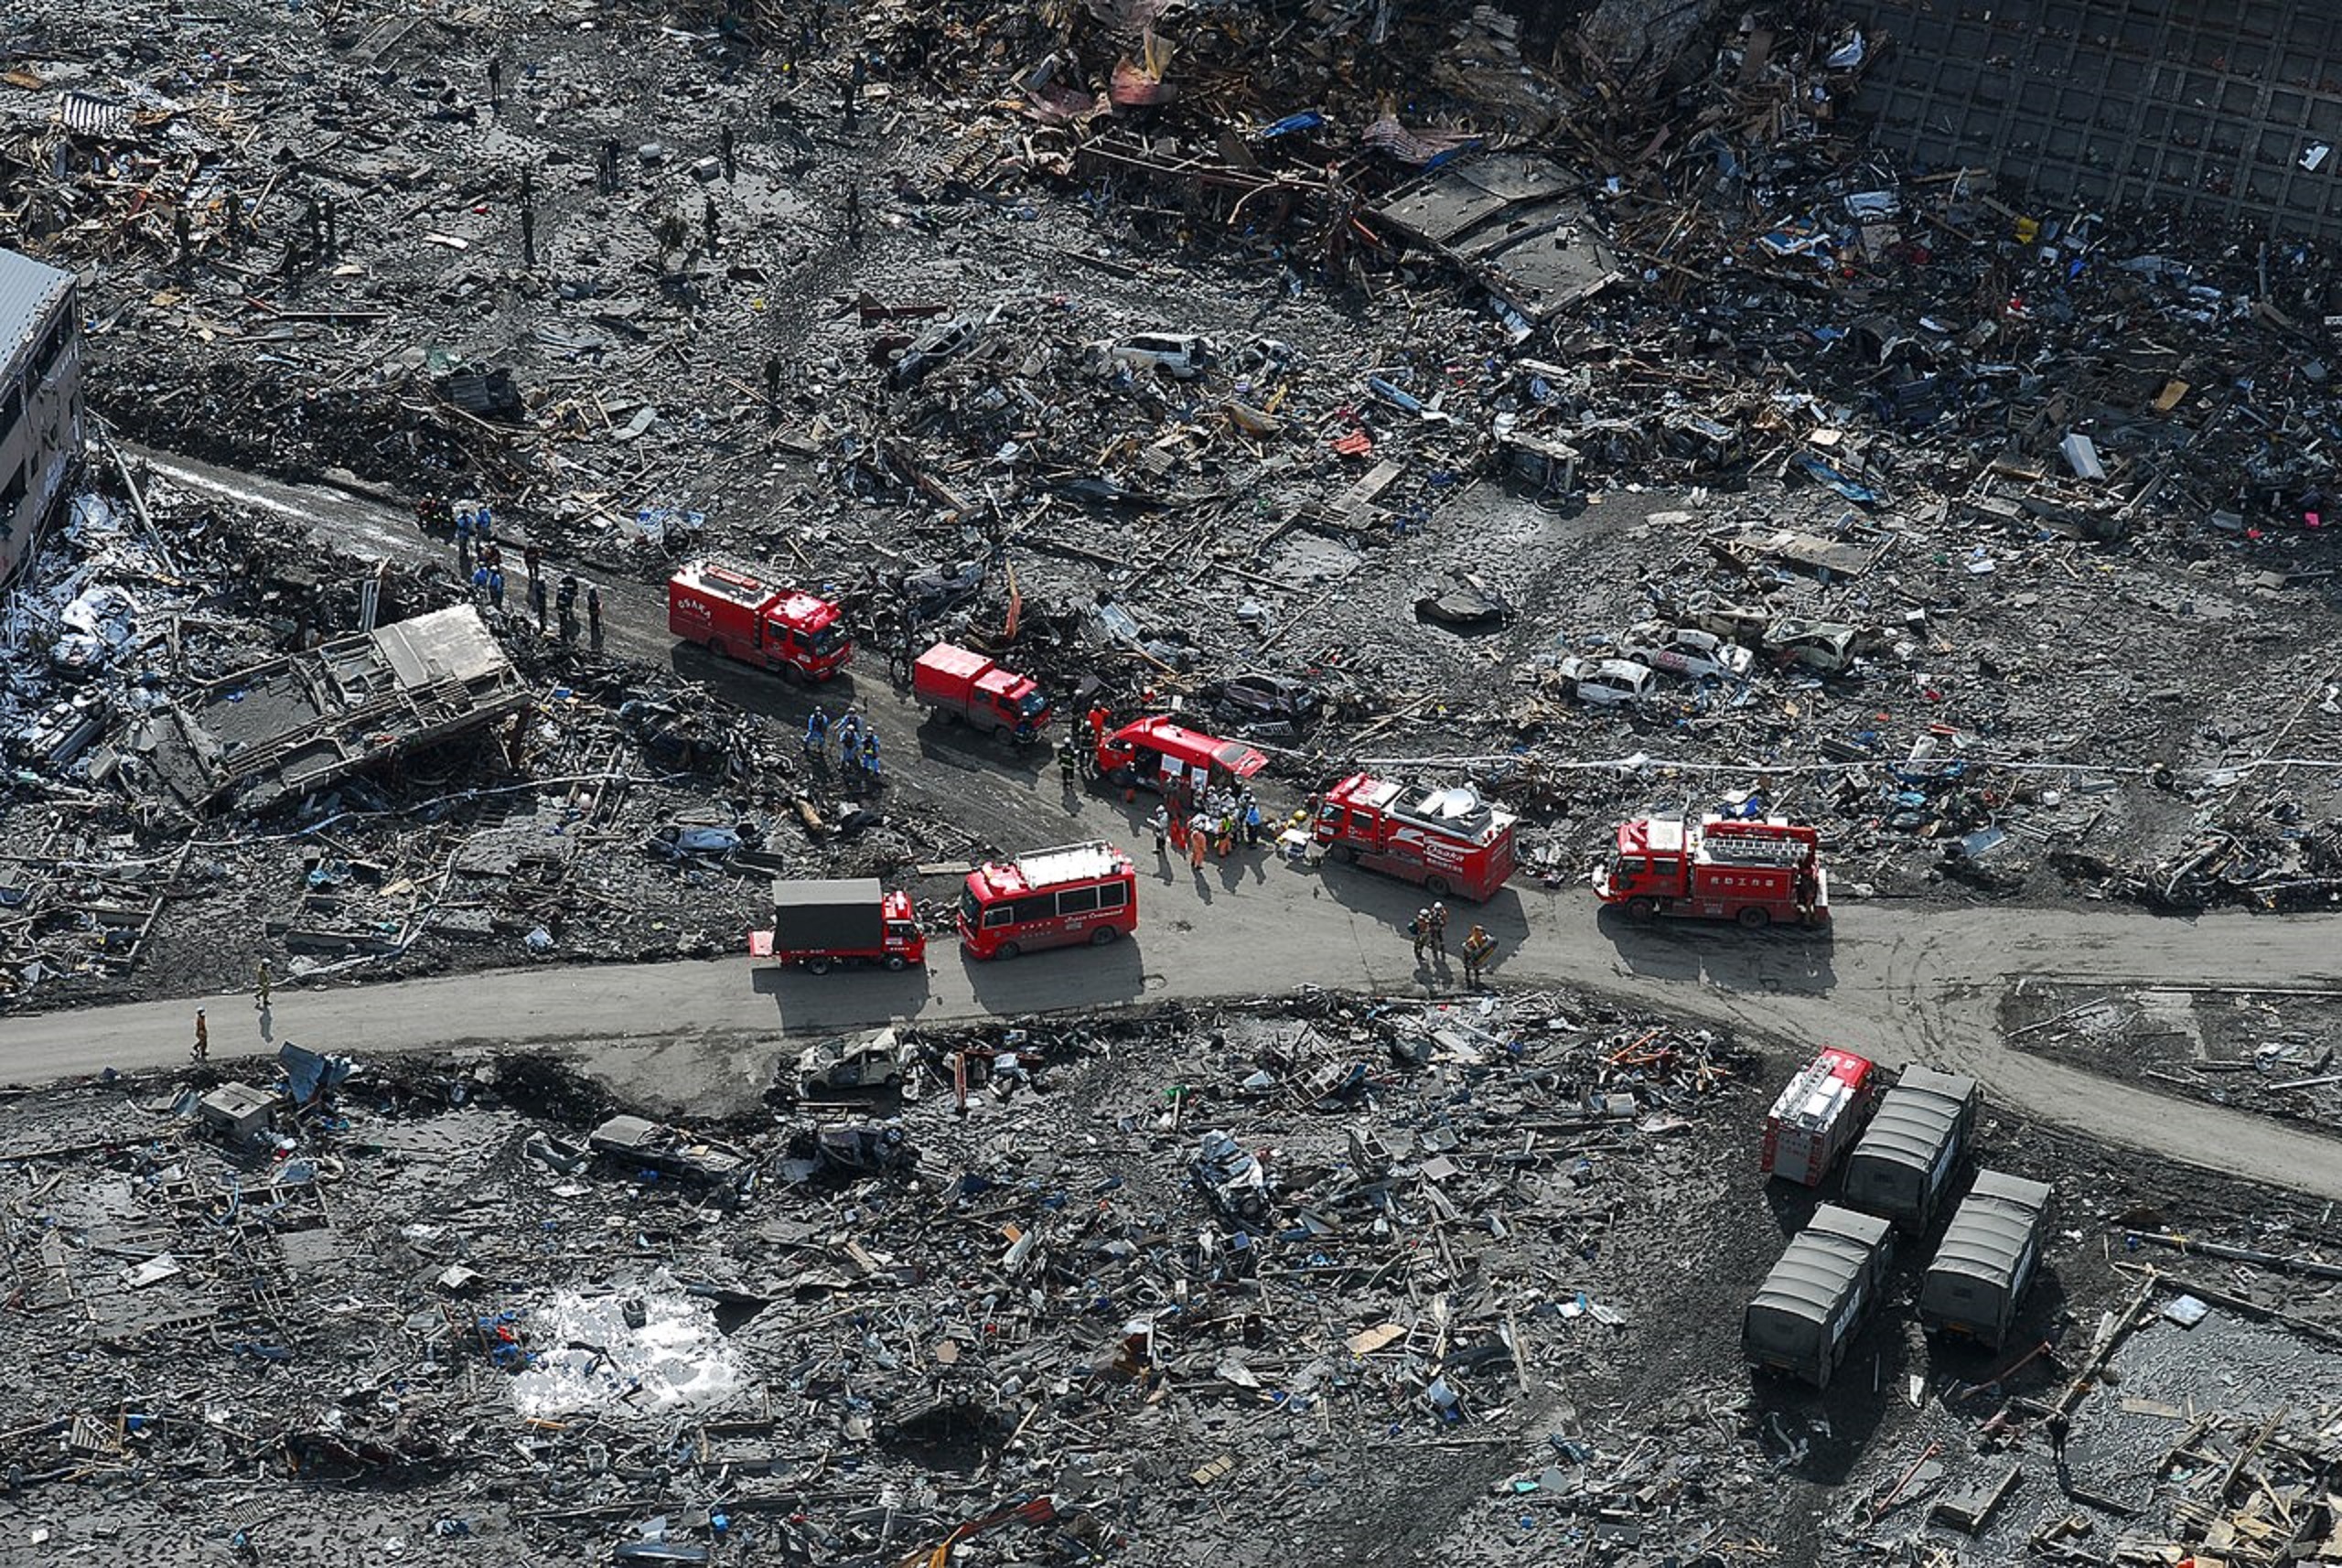 Les dégâts causés par le séisme et le tsunami de 2011 au Japon. © U.S. Navy photo by Mass Communication Specialist 3rd Class Dylan McCord,&nbsp;domaine public,&nbsp;Wikimedia Commons